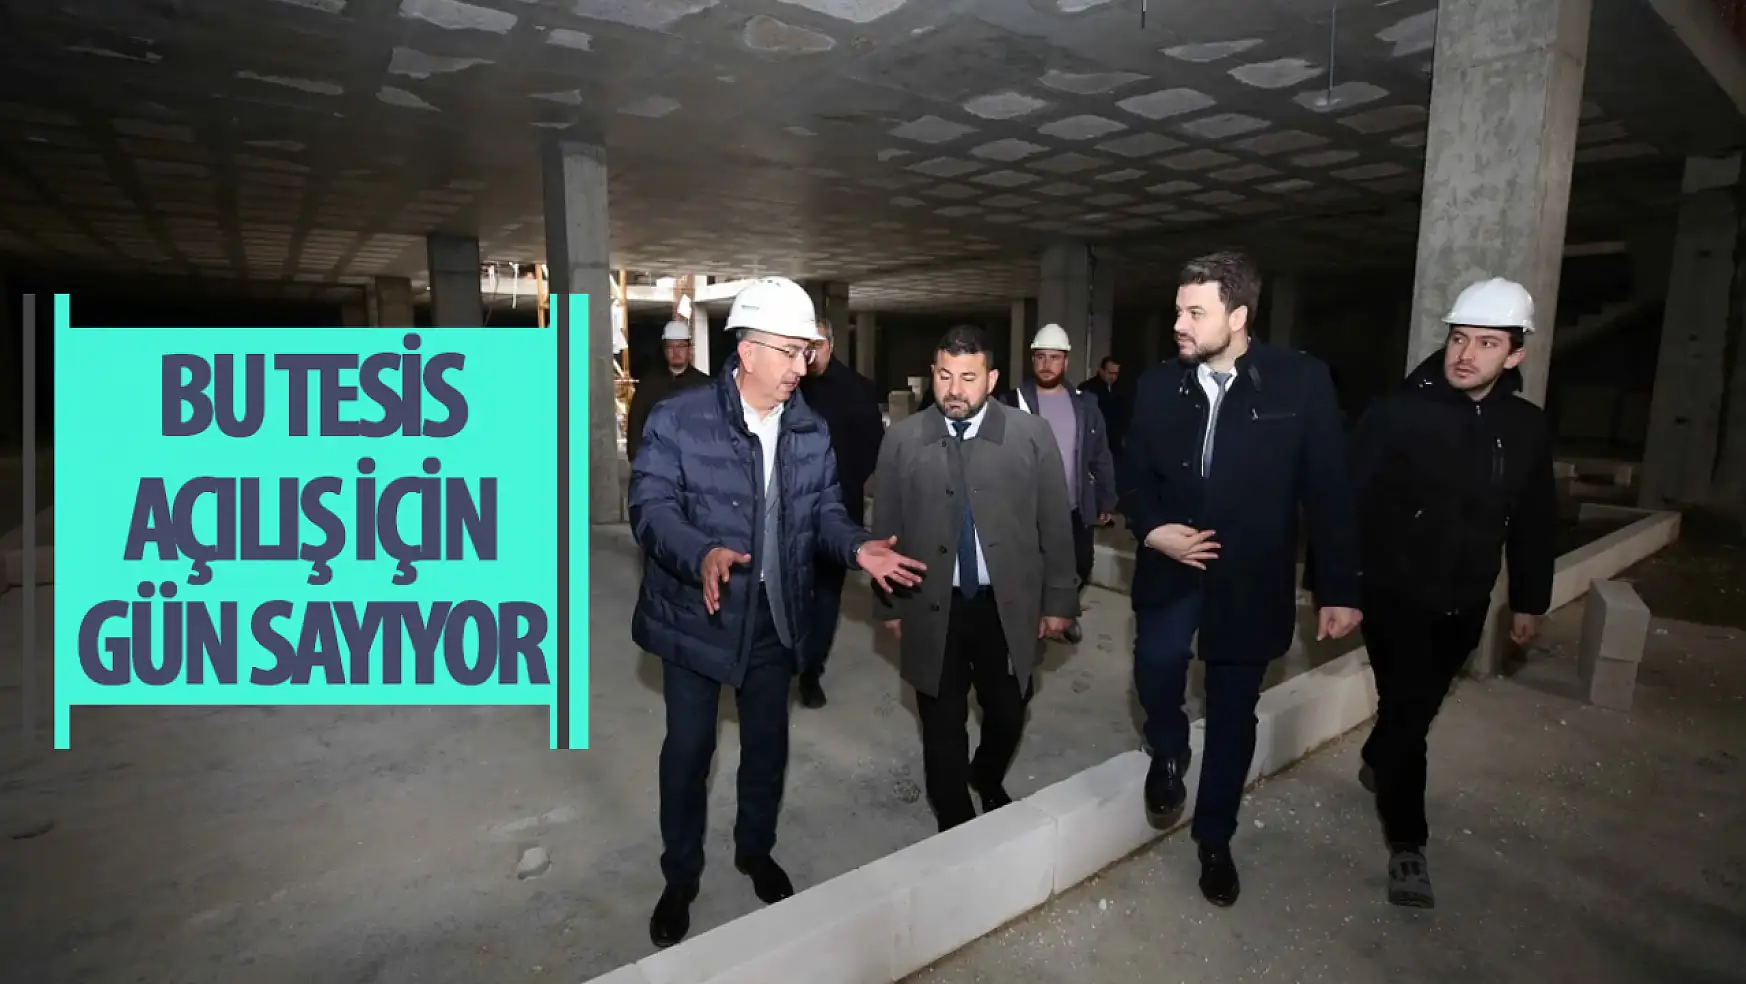 Konya'daki bu tesis açılış için gün sayıyor! Çok farklı konseptiyle bu tesiste yok yok!